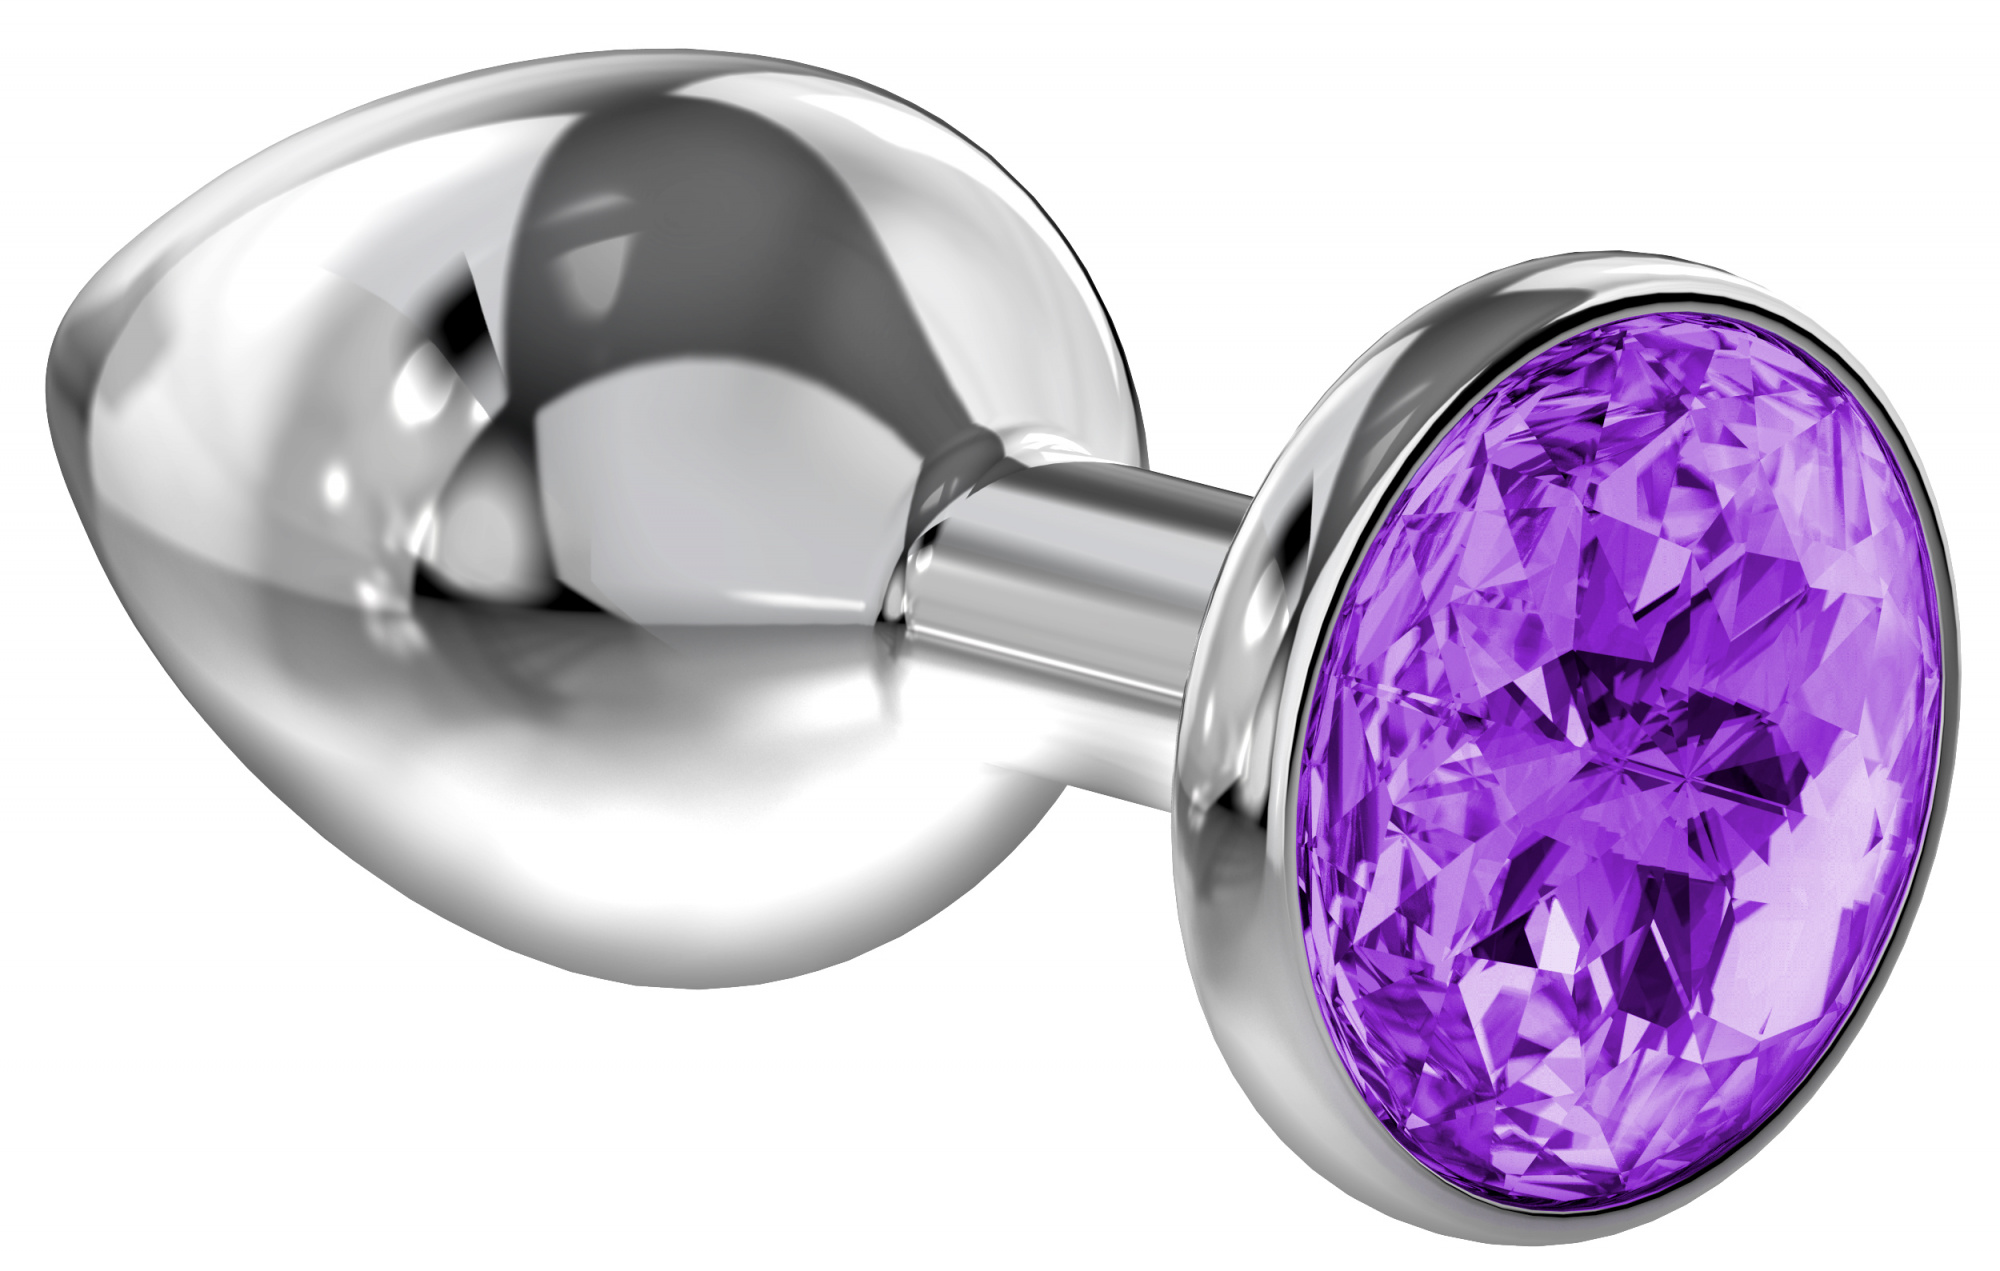 Enlarged Anal Plug Diamond Purple Sparkle XL 4028-01lola